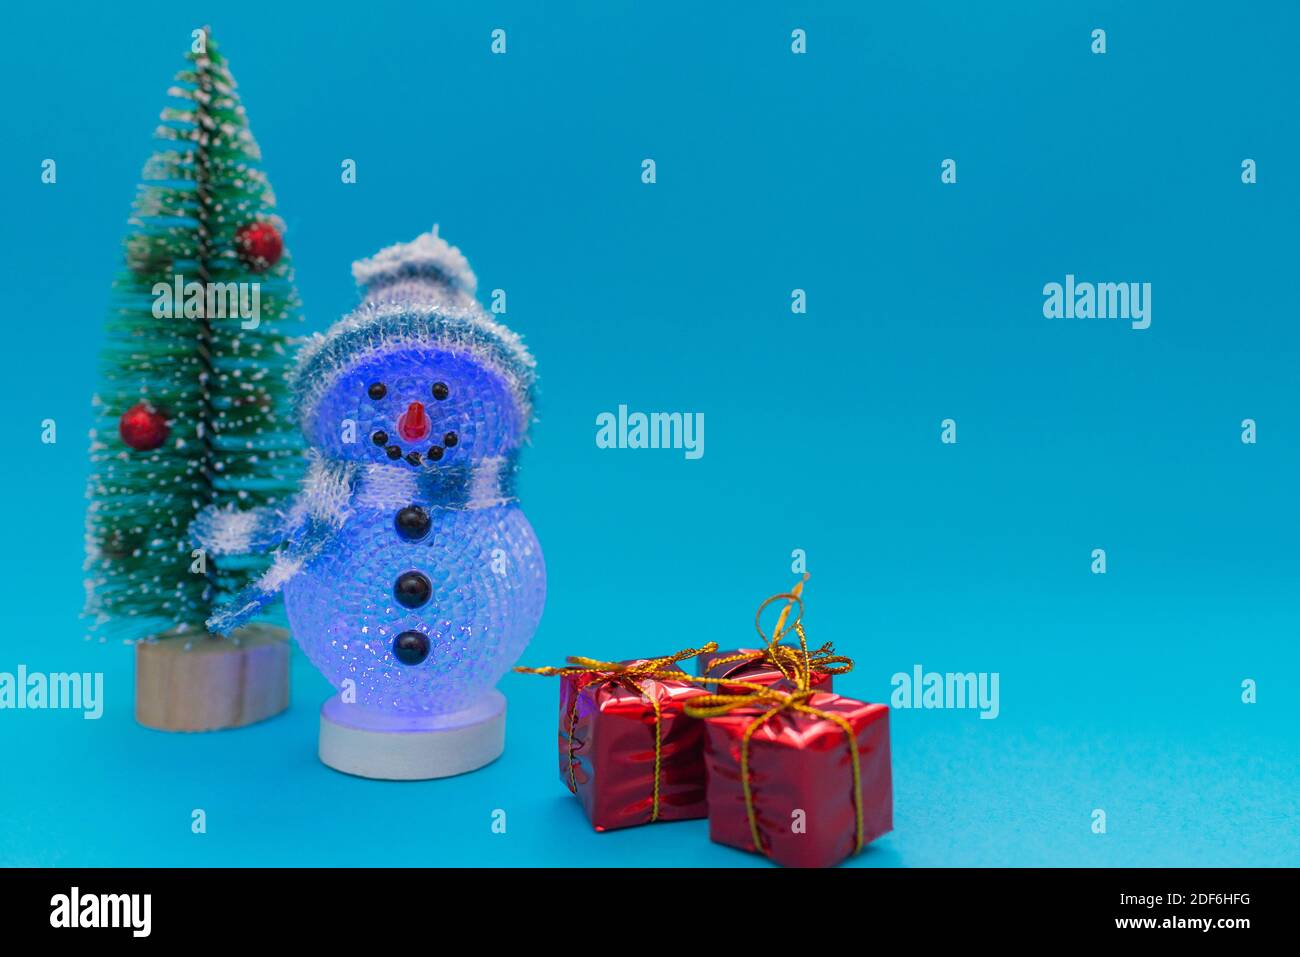 Brille dans le bonhomme de neige sombre, cadeaux et arbre de Noël avec espace de copie.Noël et fête du nouvel an. Banque D'Images